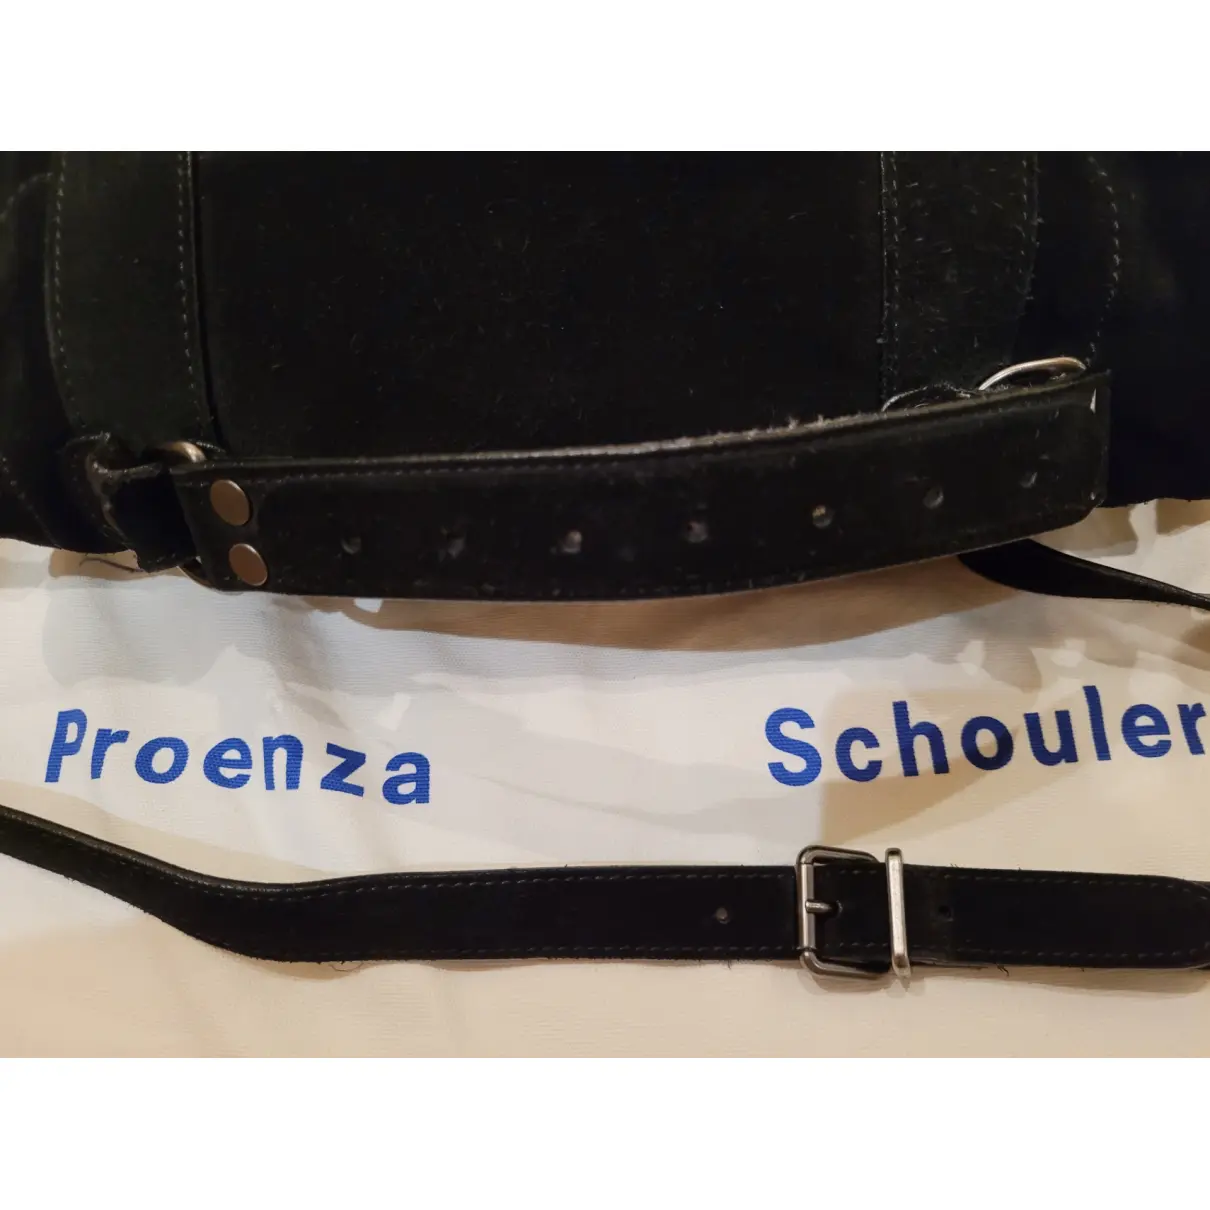 PS1 crossbody bag Proenza Schouler